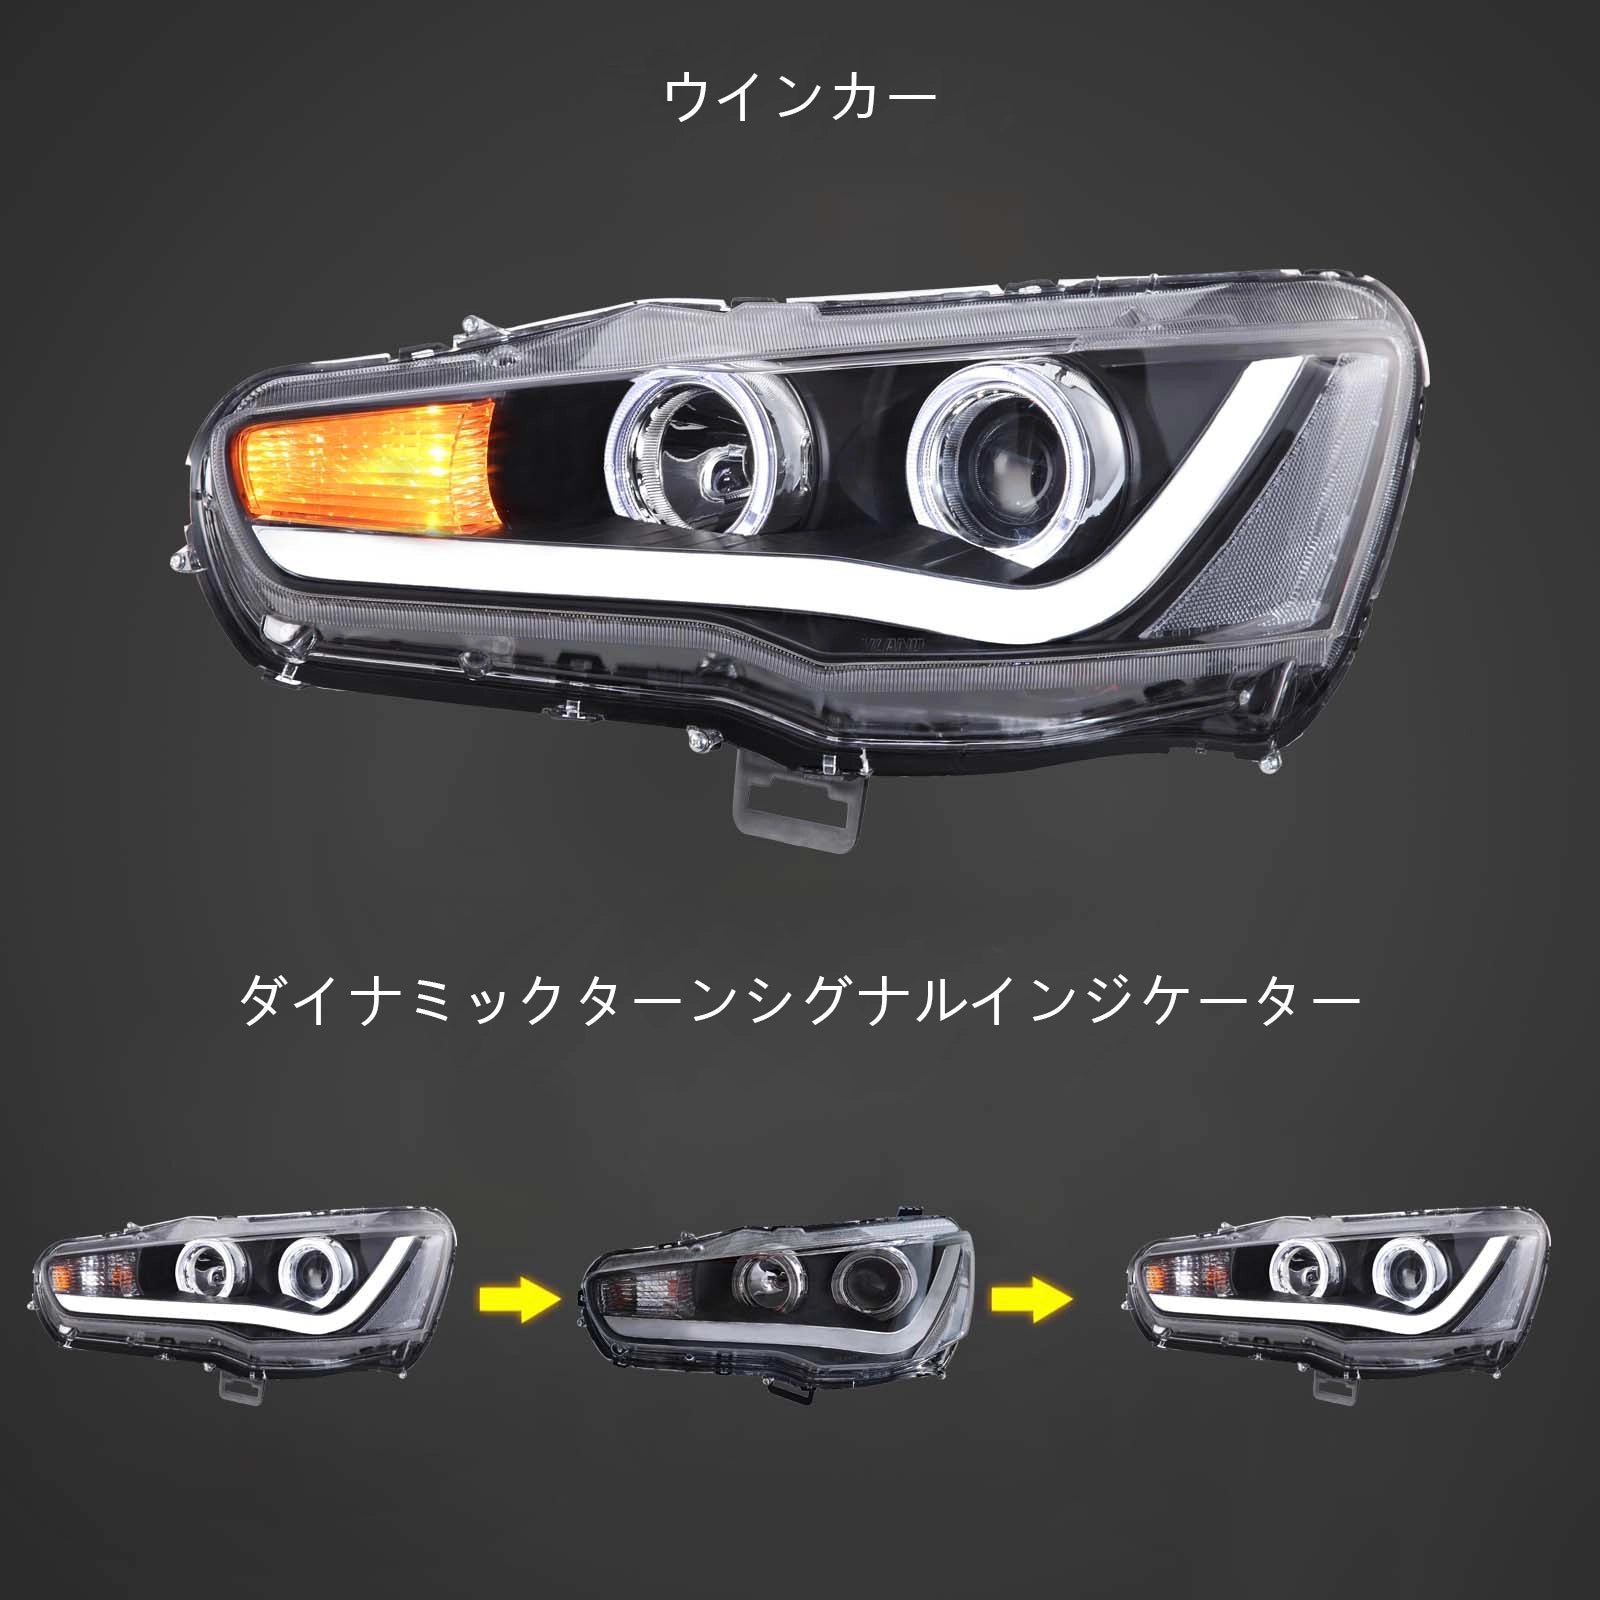 三菱ランサーヘッドライト - 4